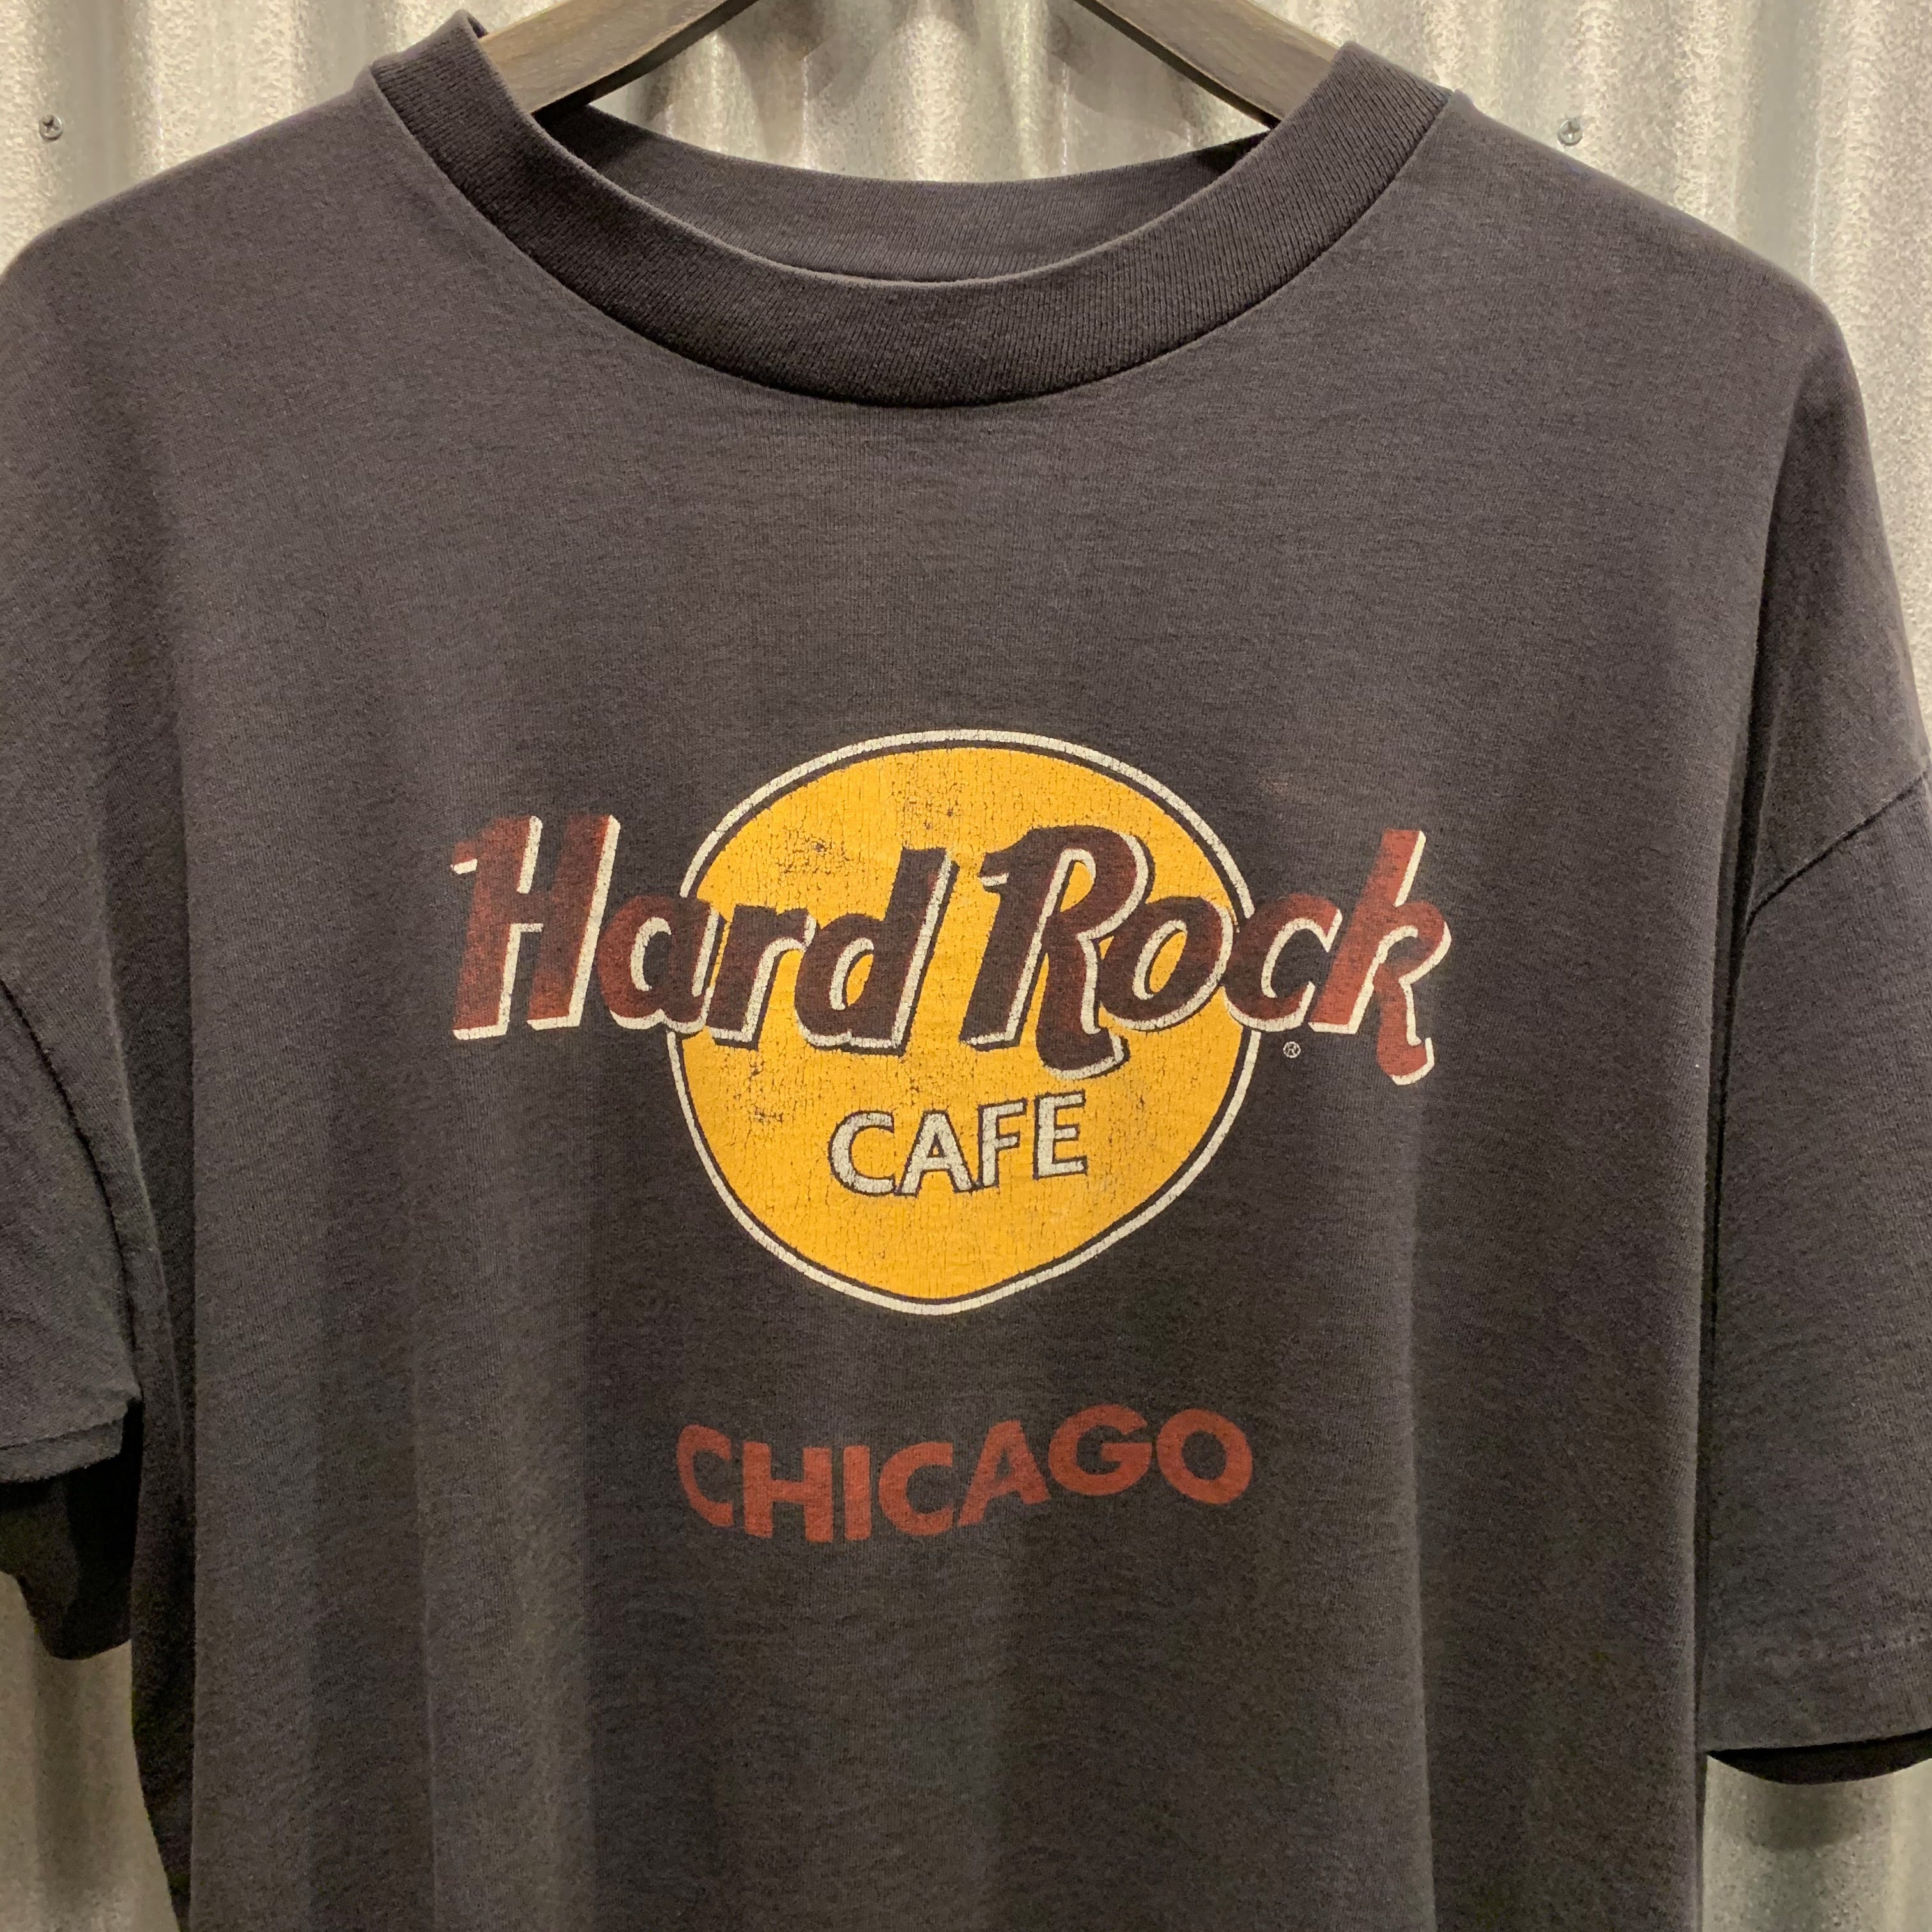 Hard Rock Cafe ハードロックカフェ Tシャツ サンディエゴ - トップス